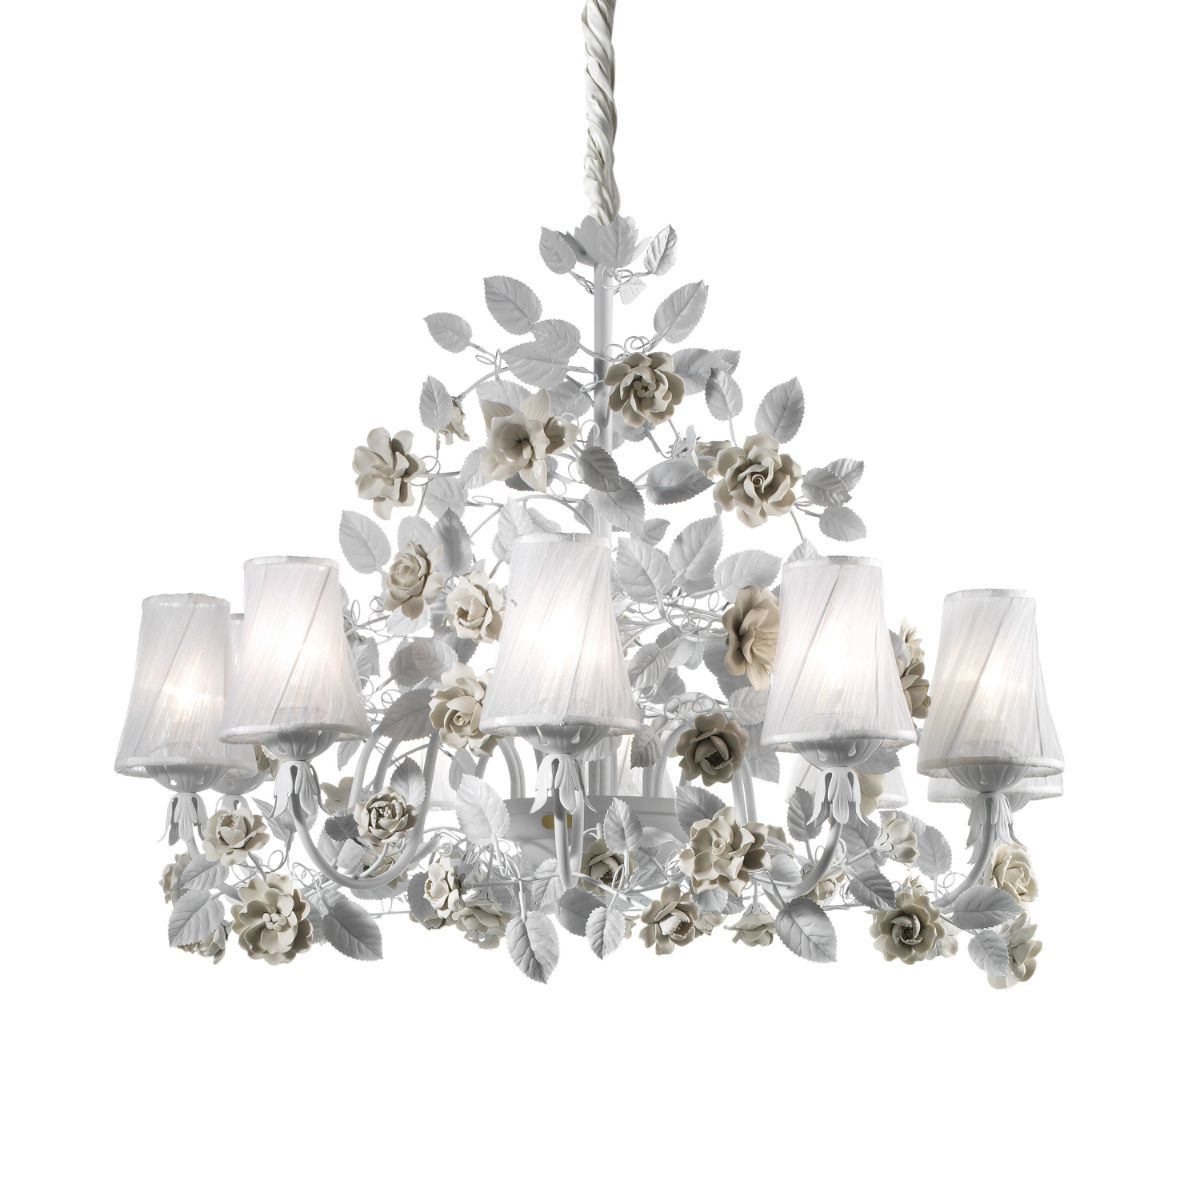 Marie Antoinette 10 light chandelier - White